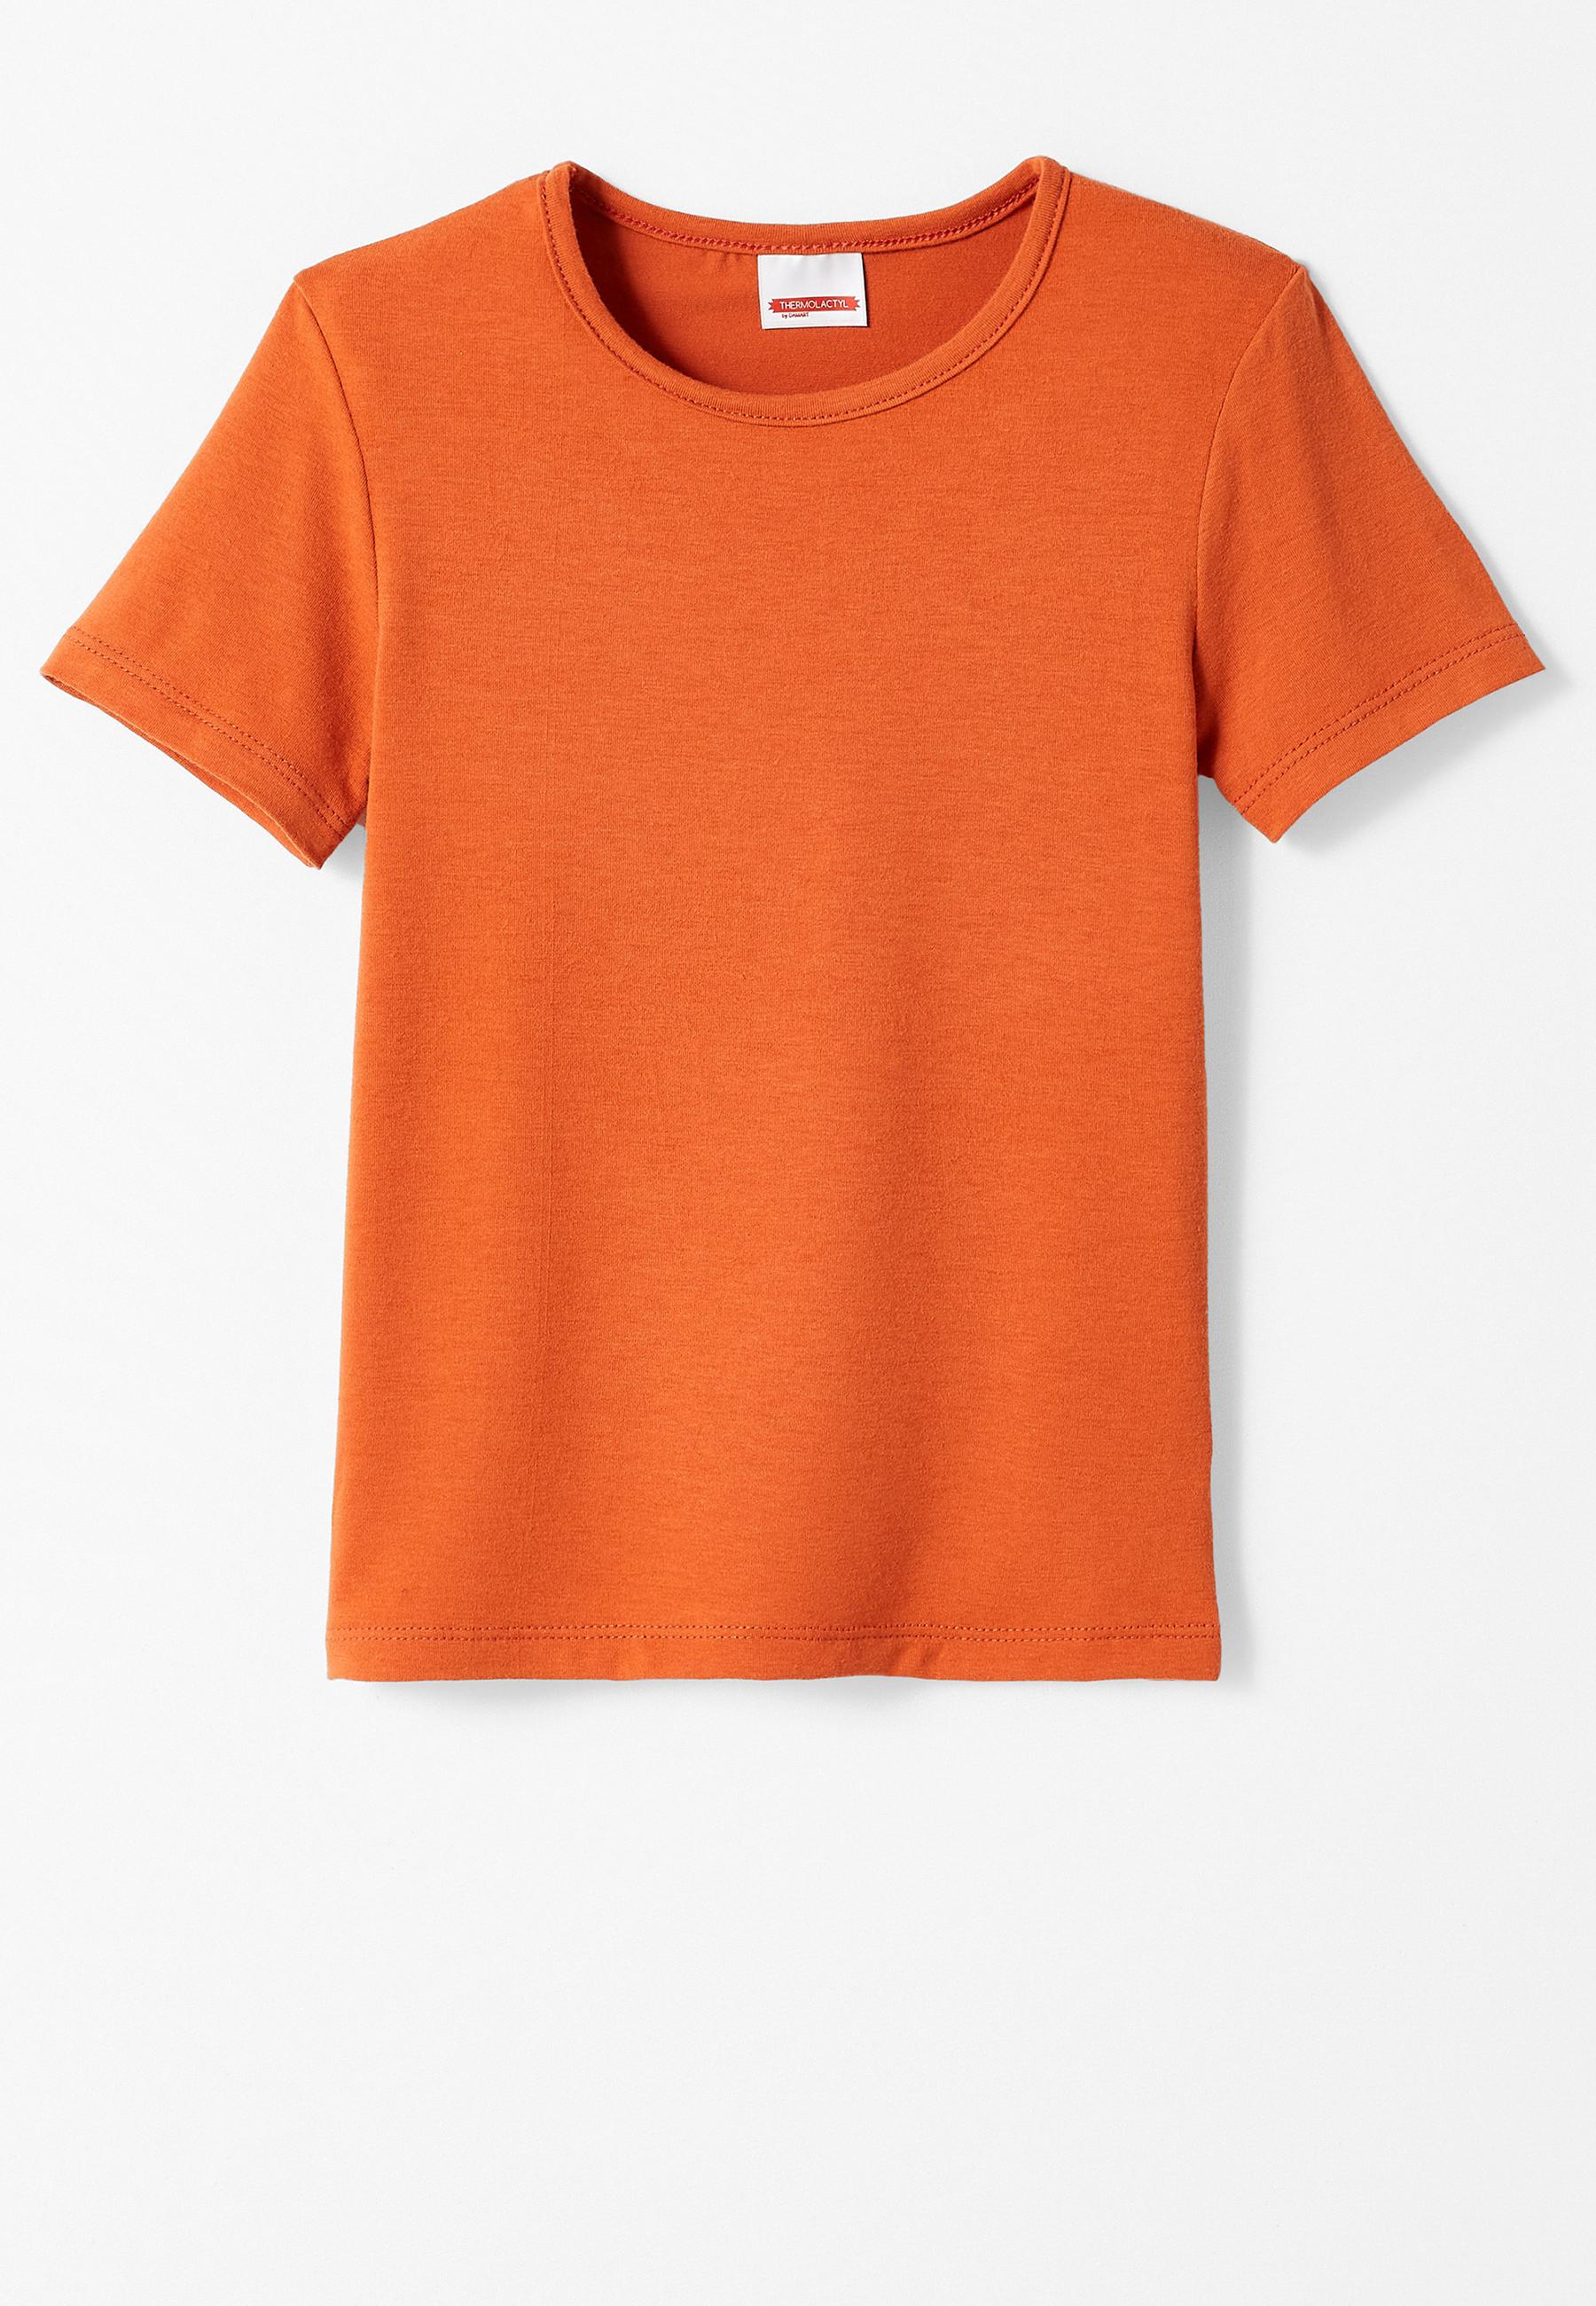 T-shirt. Jungen Orange 164 von Damart